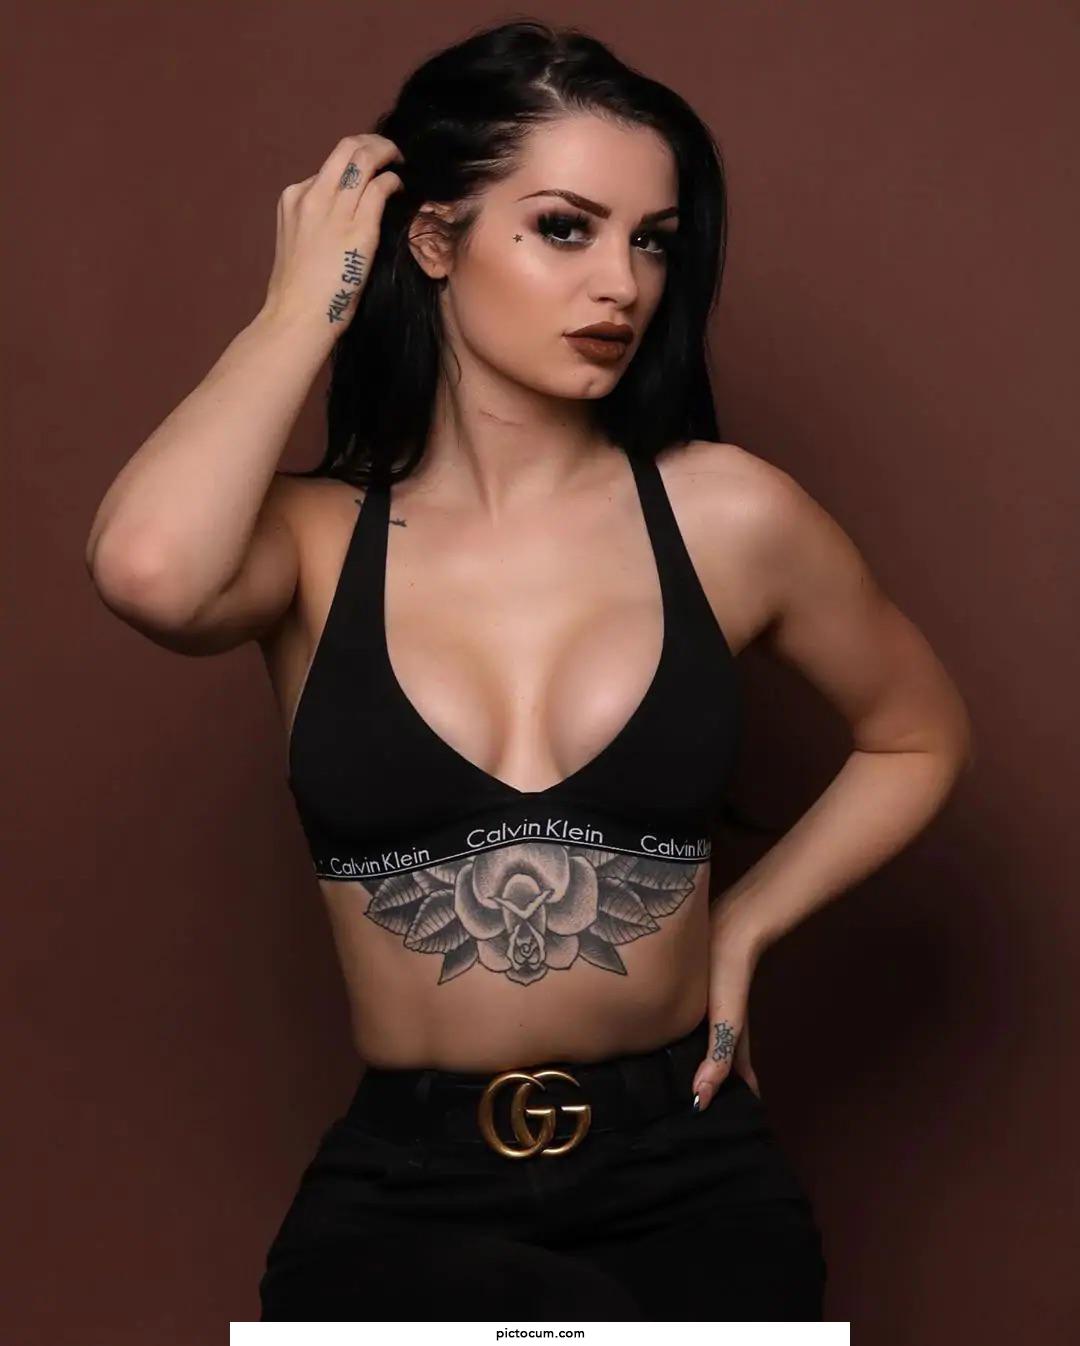 Paige is my dream big titty goth gf